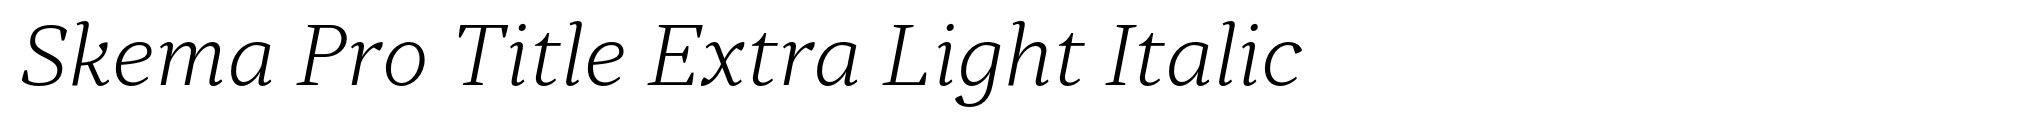 Skema Pro Title Extra Light Italic image